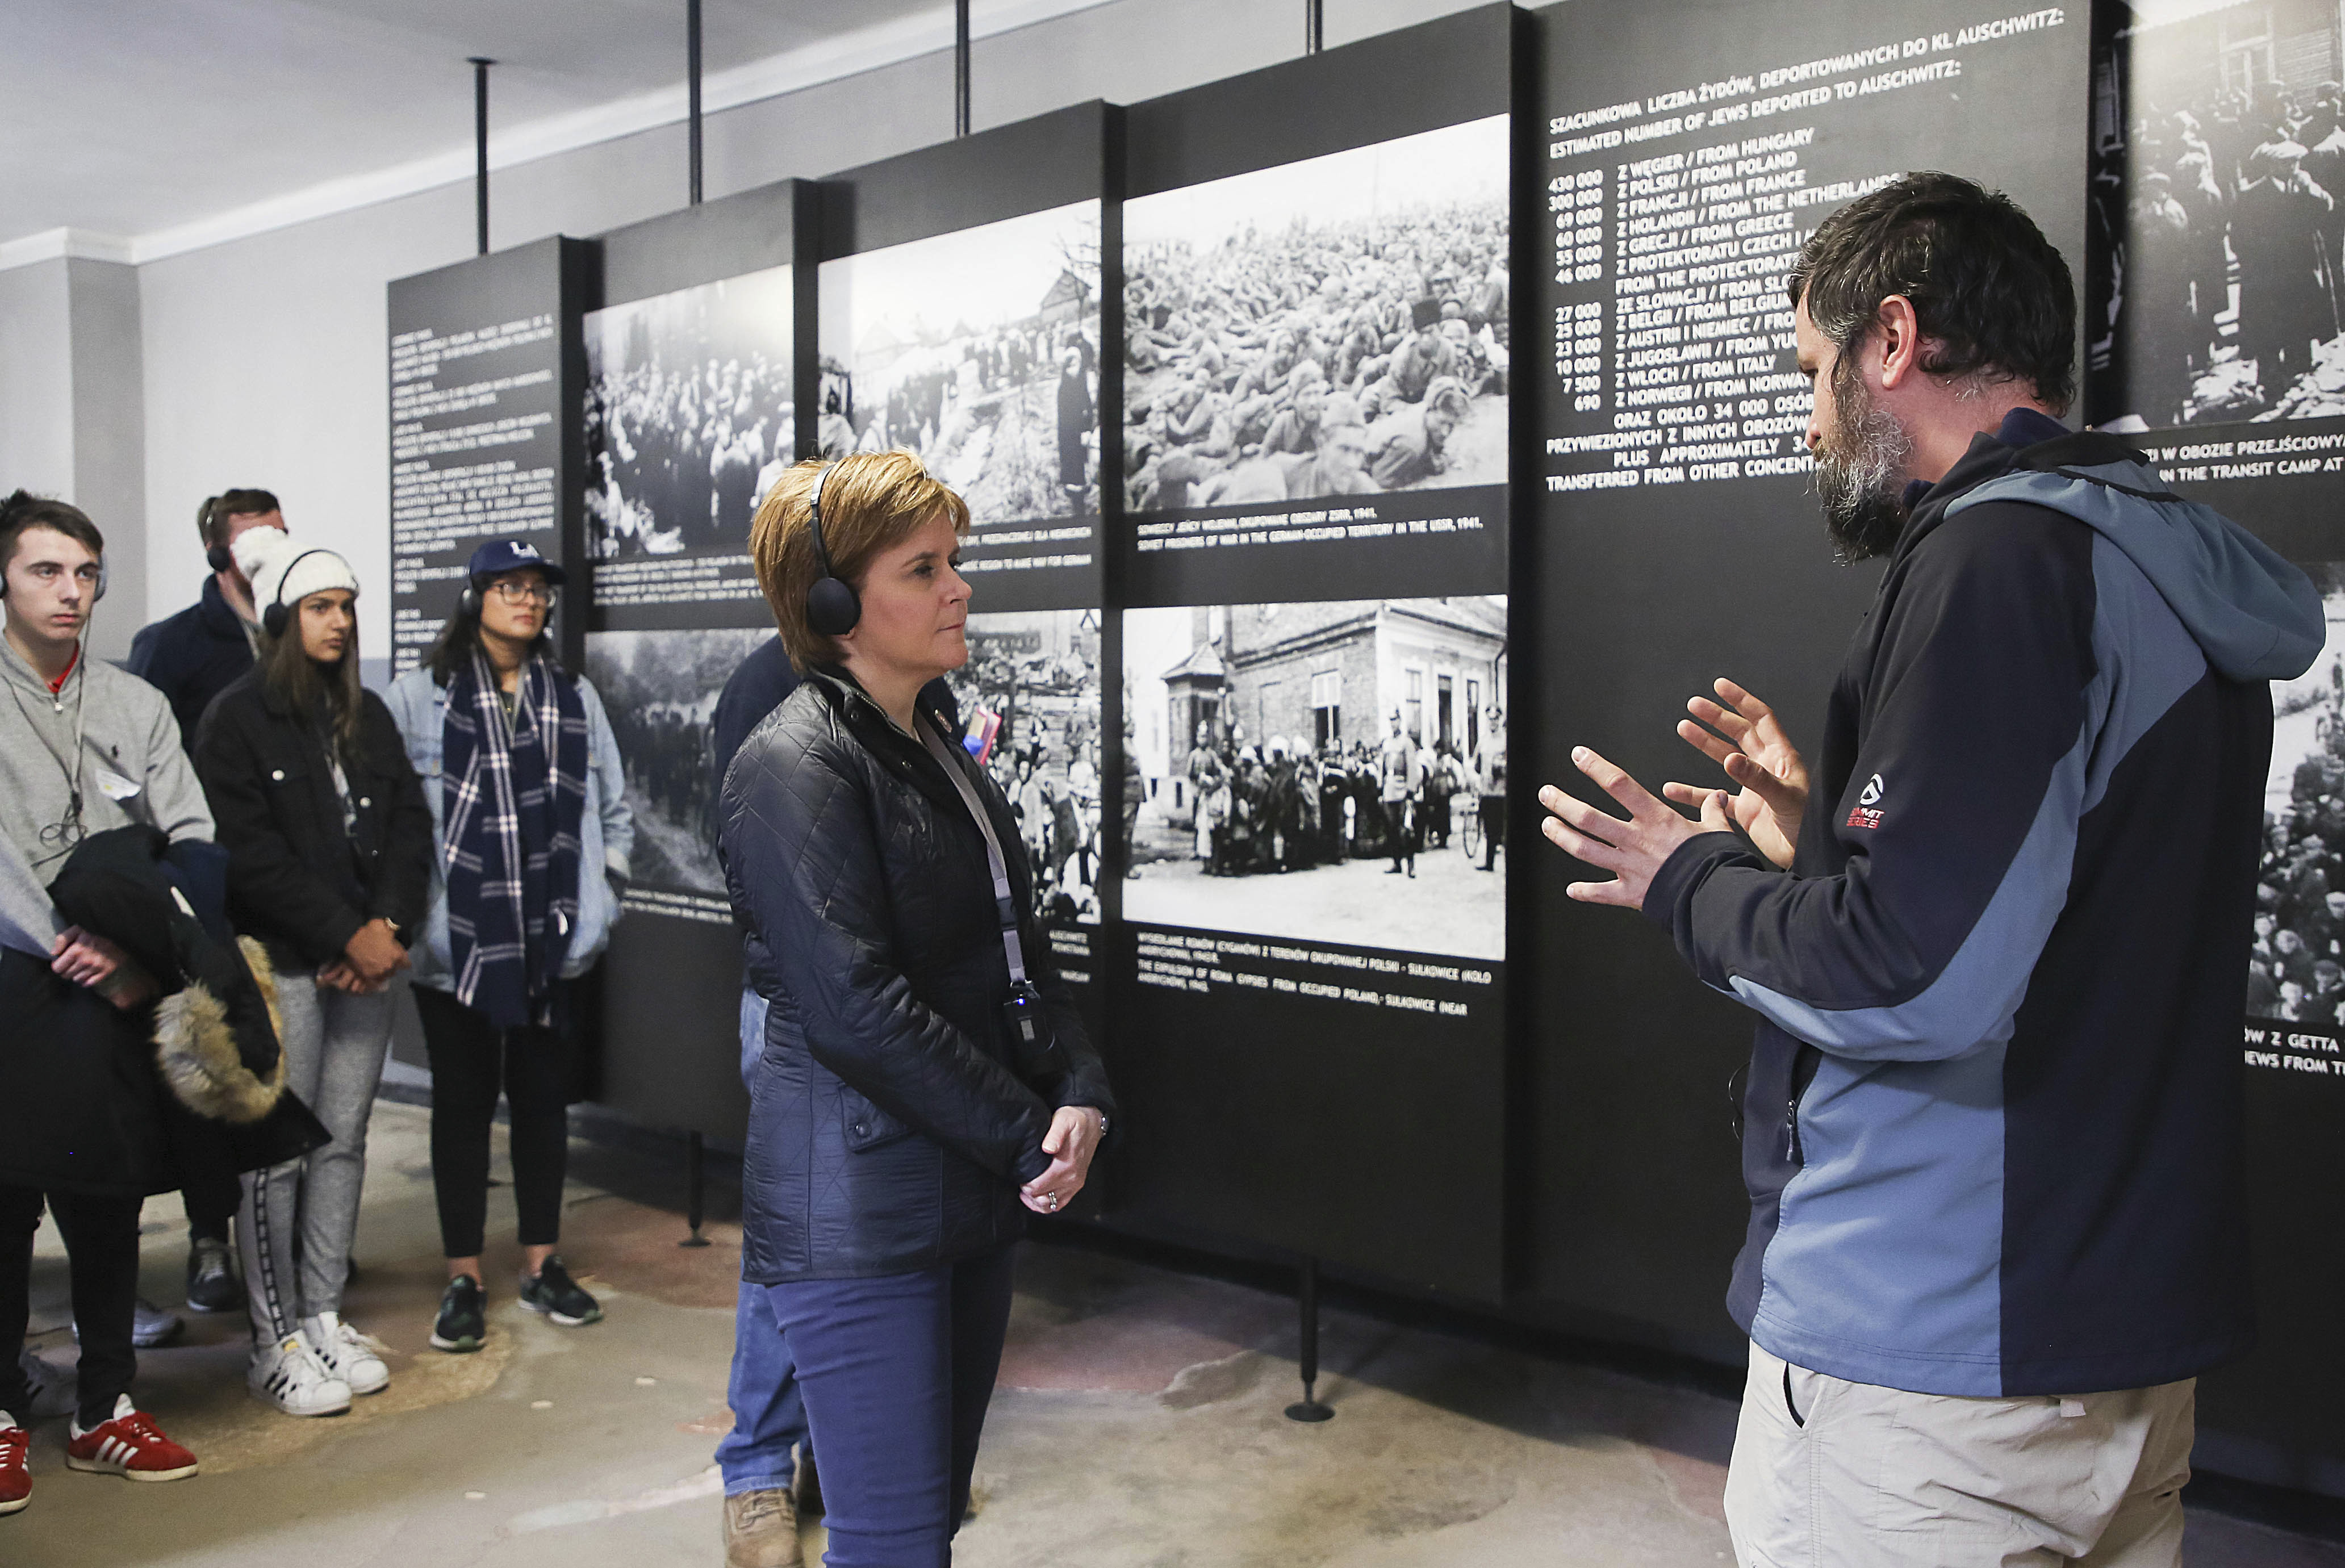 Scotland's First Minister Nicola Sturgeon is guided during her visit to Auschwitz-Birkenau (AP Photo/Beata Zawrzel)